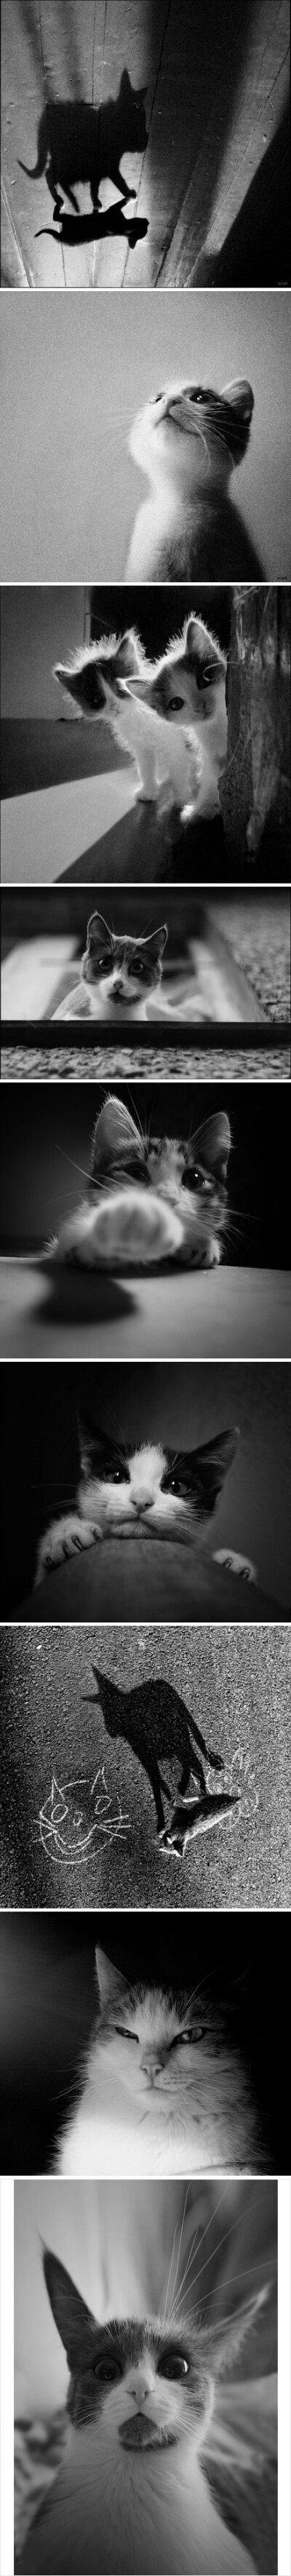 猫咪的世界，俄罗斯摄影师yoyk